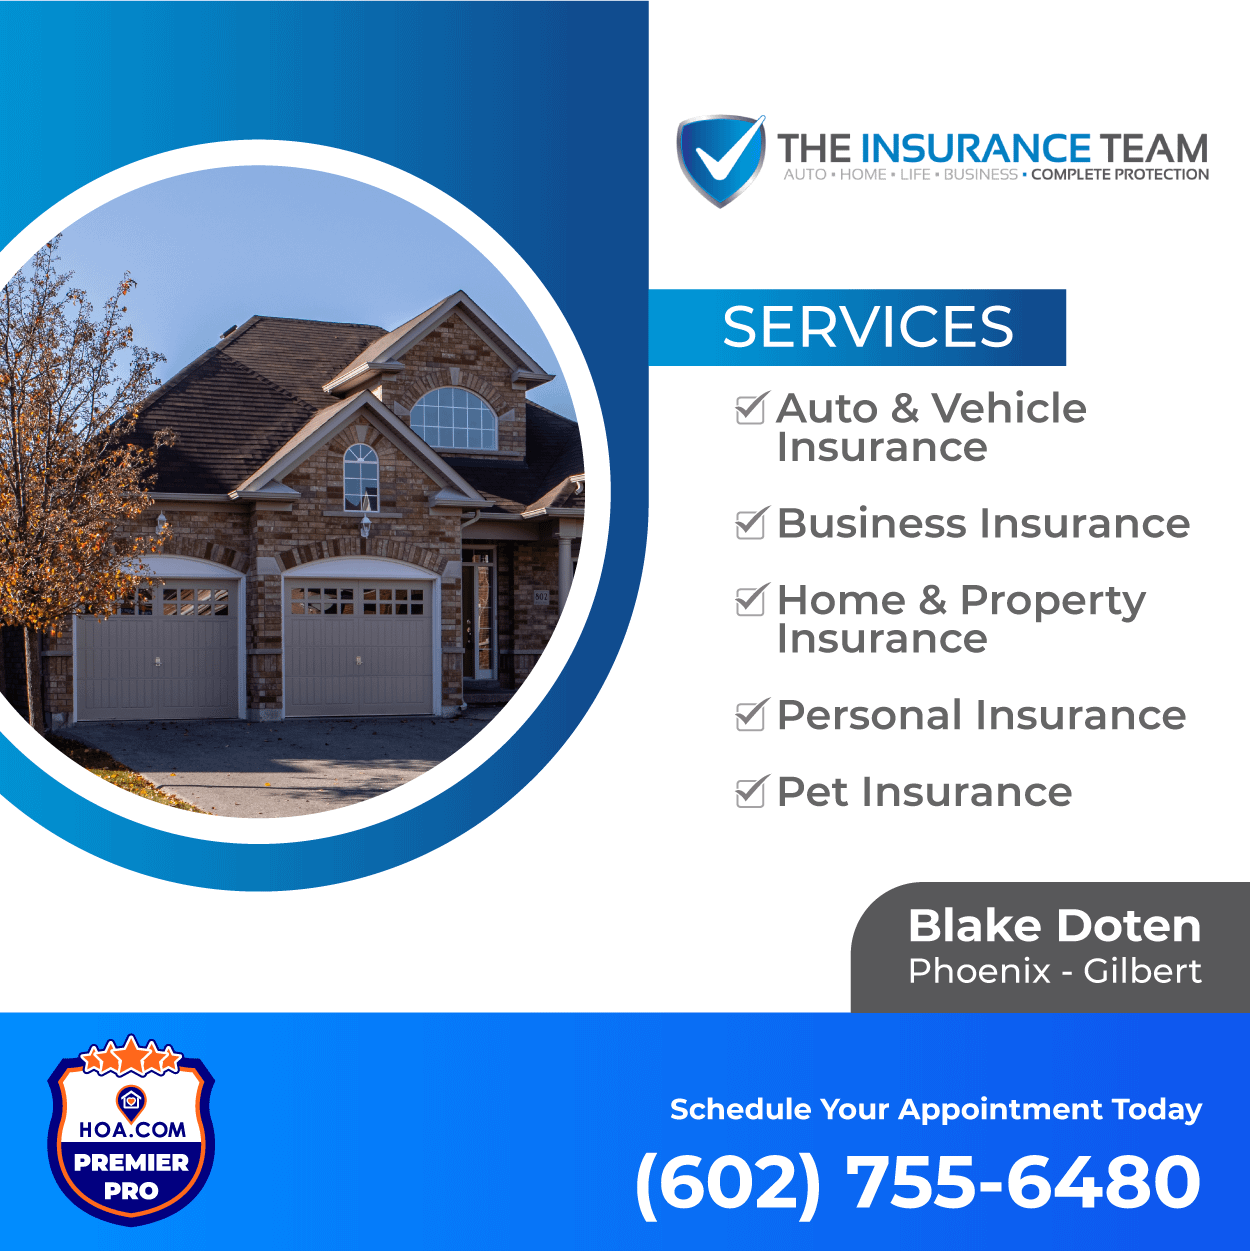 Services of The Insurance Team Gilbert, Phoenix, AZ